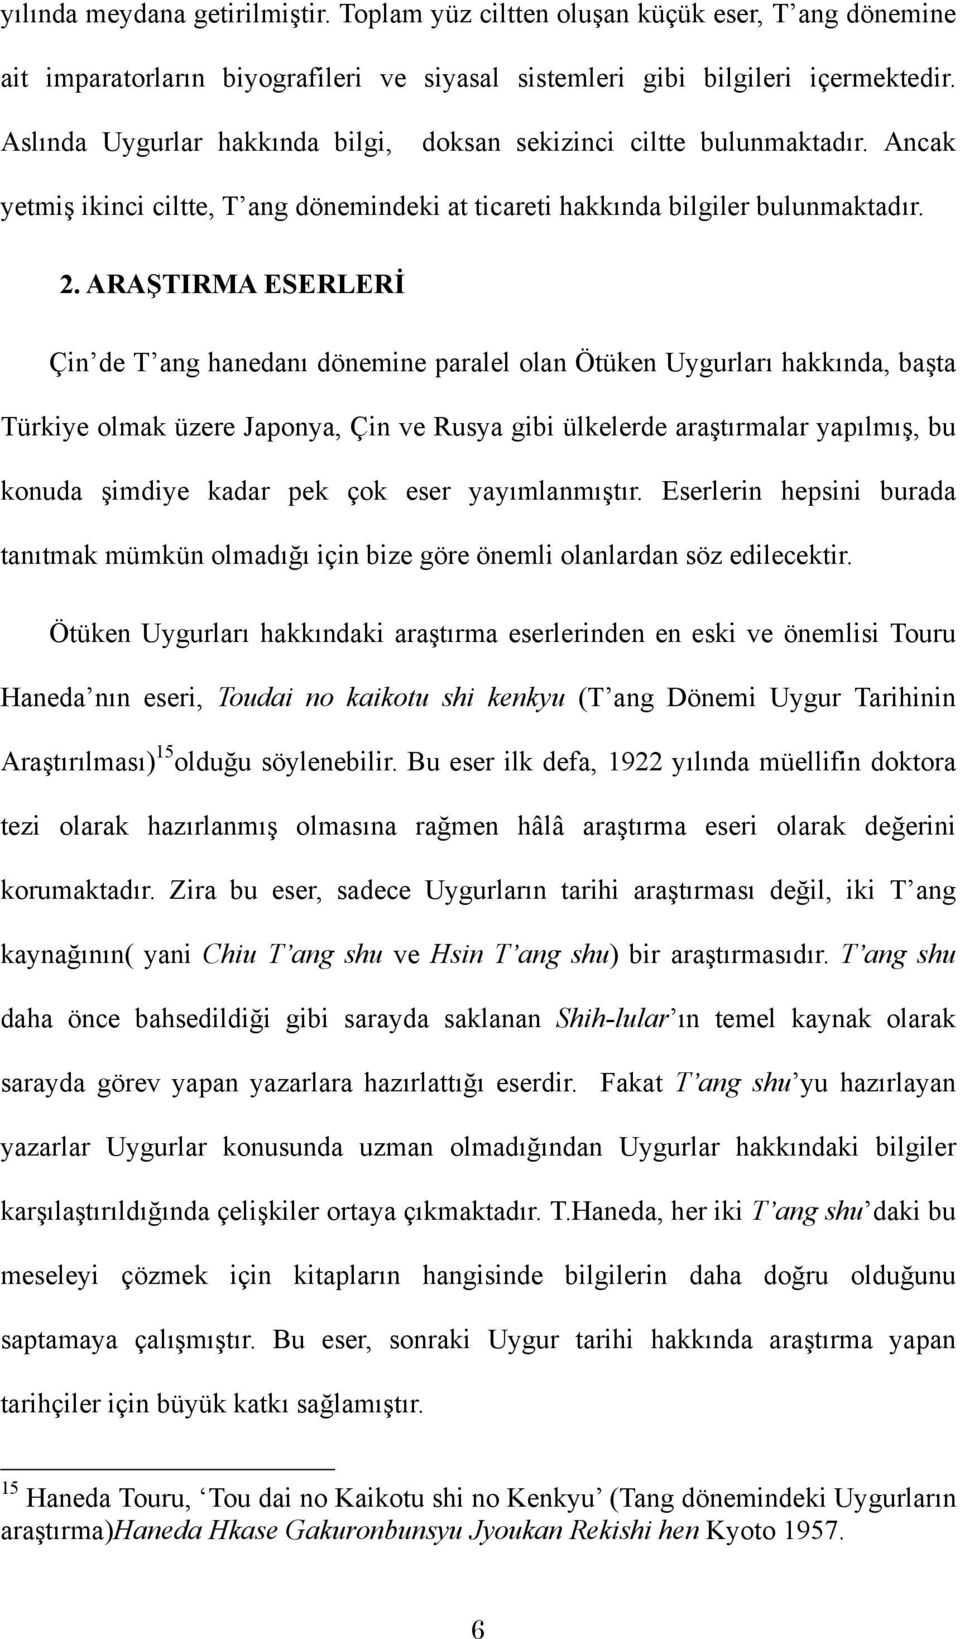 ARAŞTIRMA ESERLERİ Çin de T ang hanedanı dönemine paralel olan Ötüken Uygurları hakkında, başta Türkiye olmak üzere Japonya, Çin ve Rusya gibi ülkelerde araştırmalar yapılmış, bu konuda şimdiye kadar